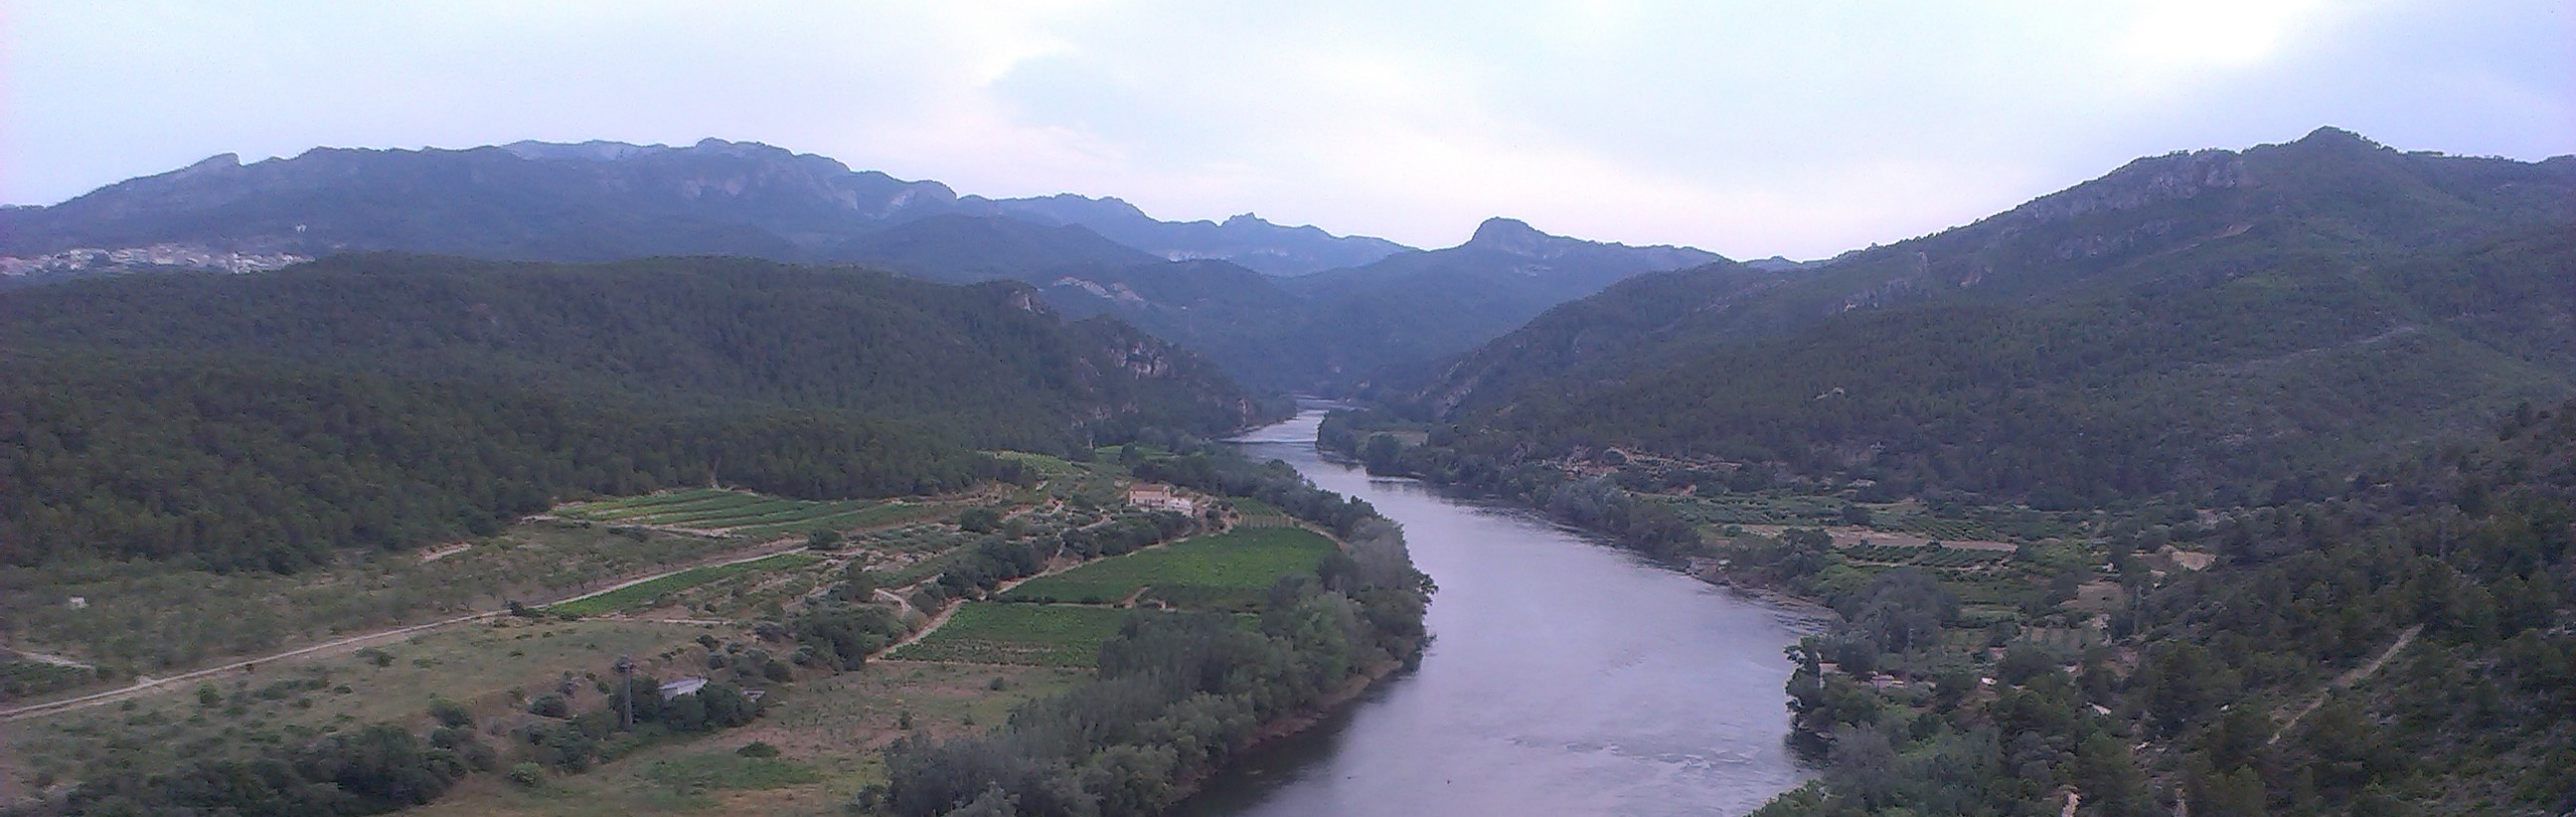 La Confederación Hidrográfica del Ebro destaca la importancia de la protección forestal en el Día Internacional de los Bosques